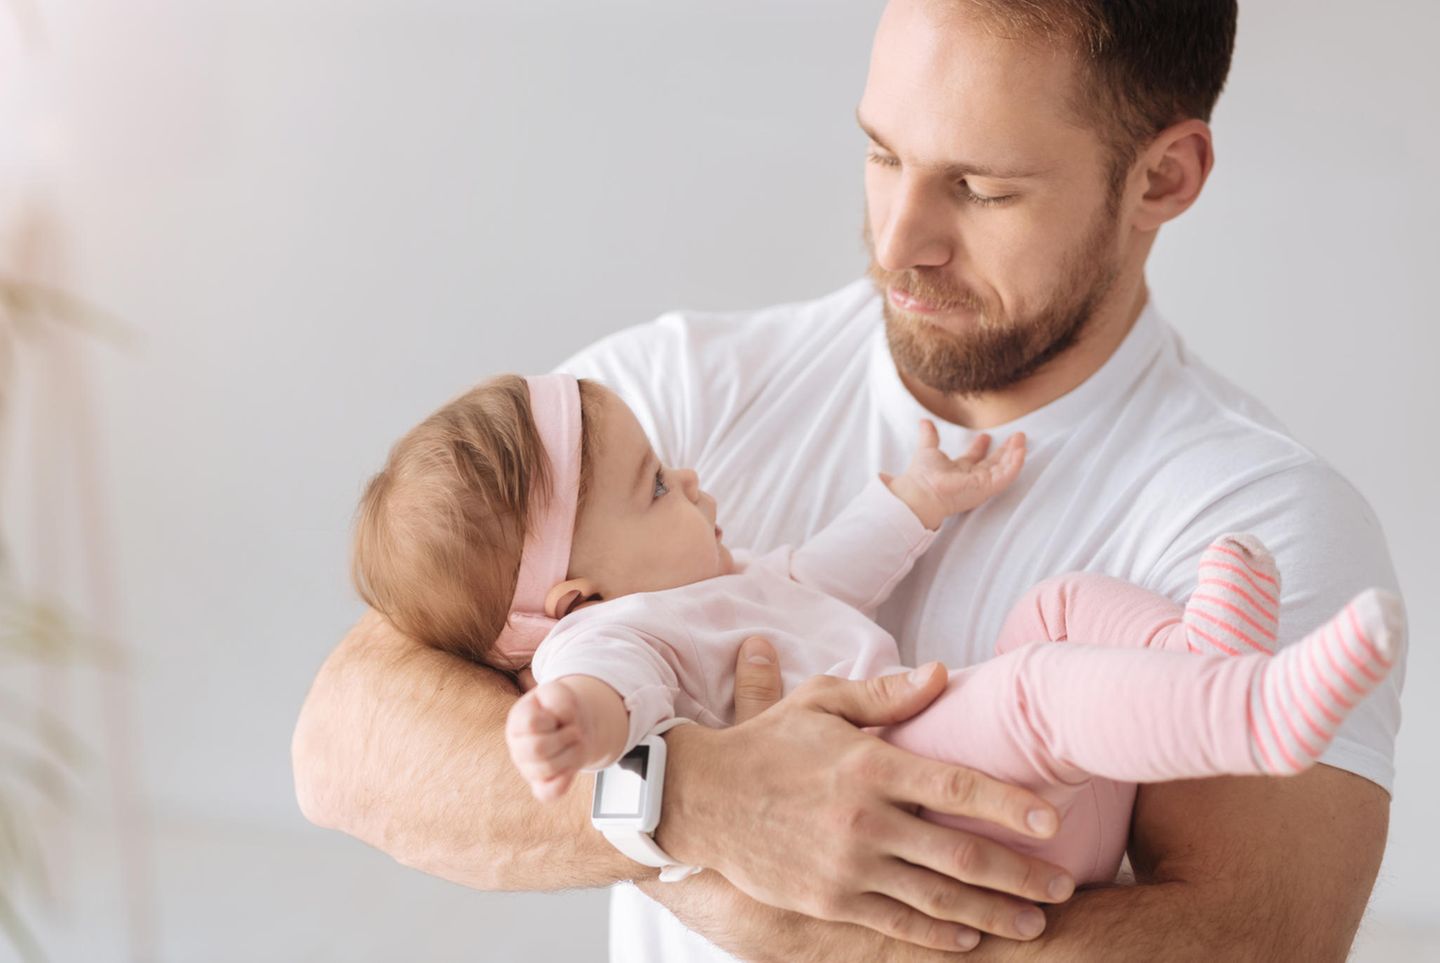 Väter-Fitness im Babyalltag: Vater mit Baby im Arm